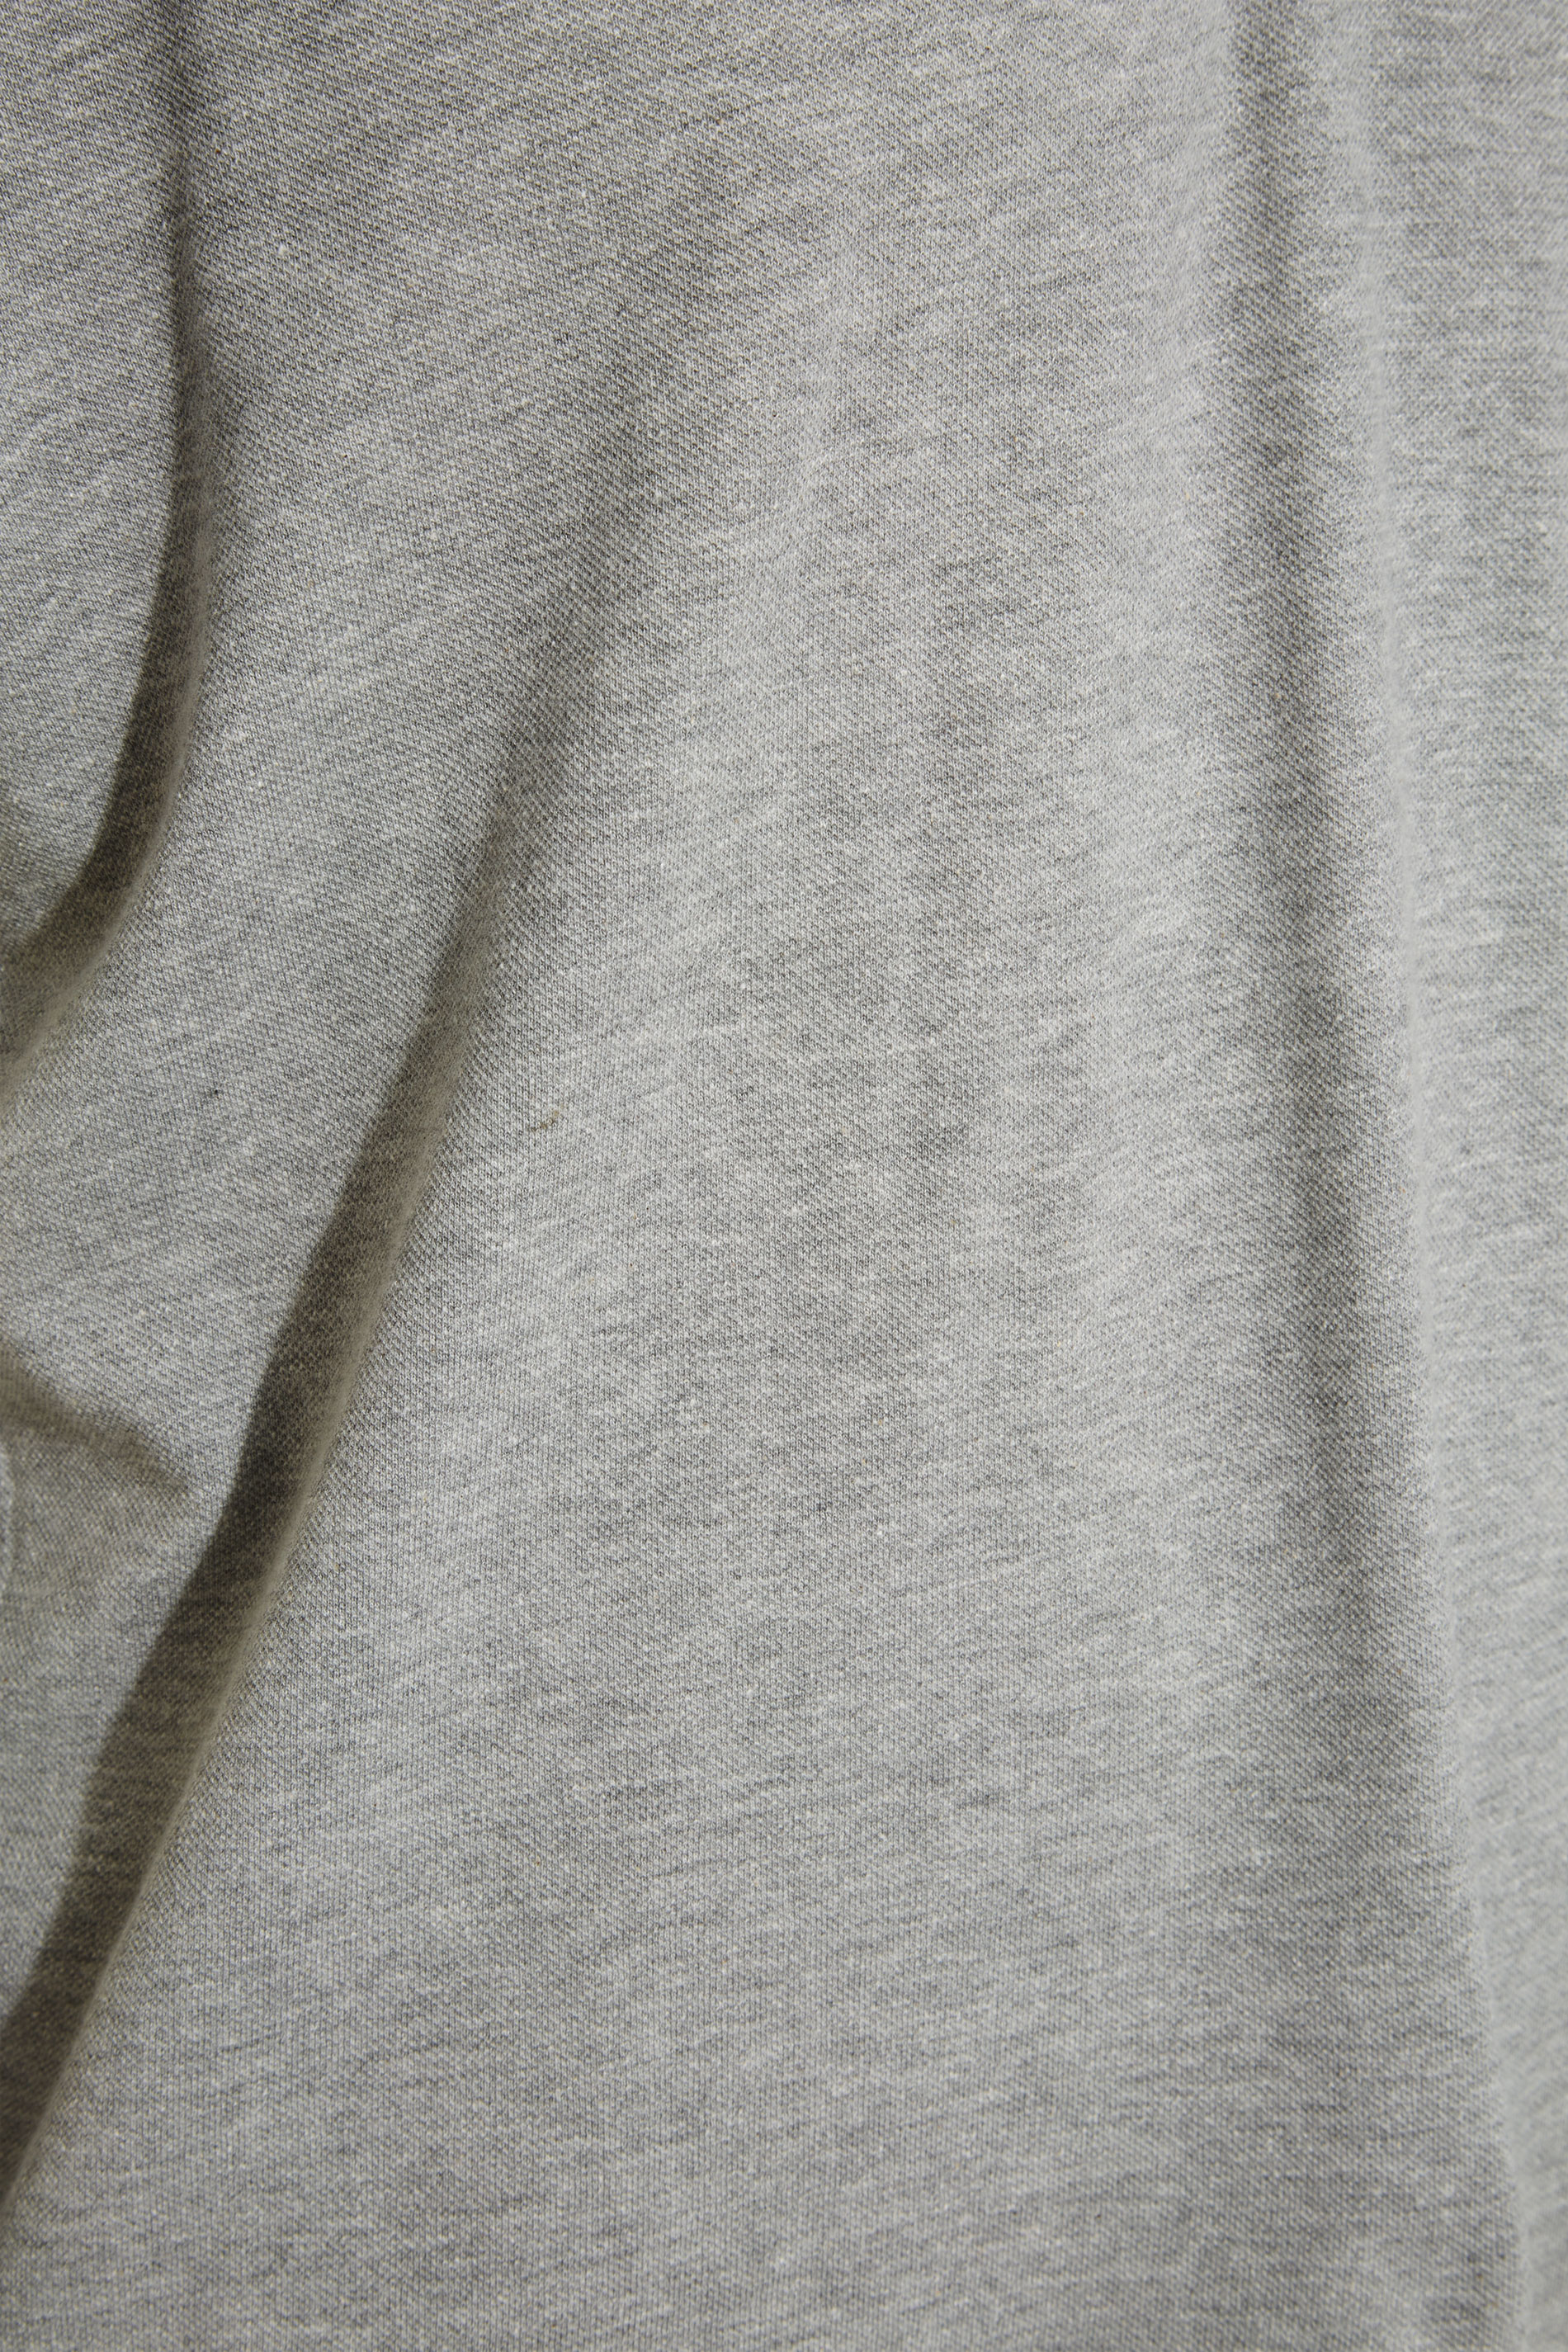 BadRhino Grey Marl Essential Polo Shirt | BadRhino